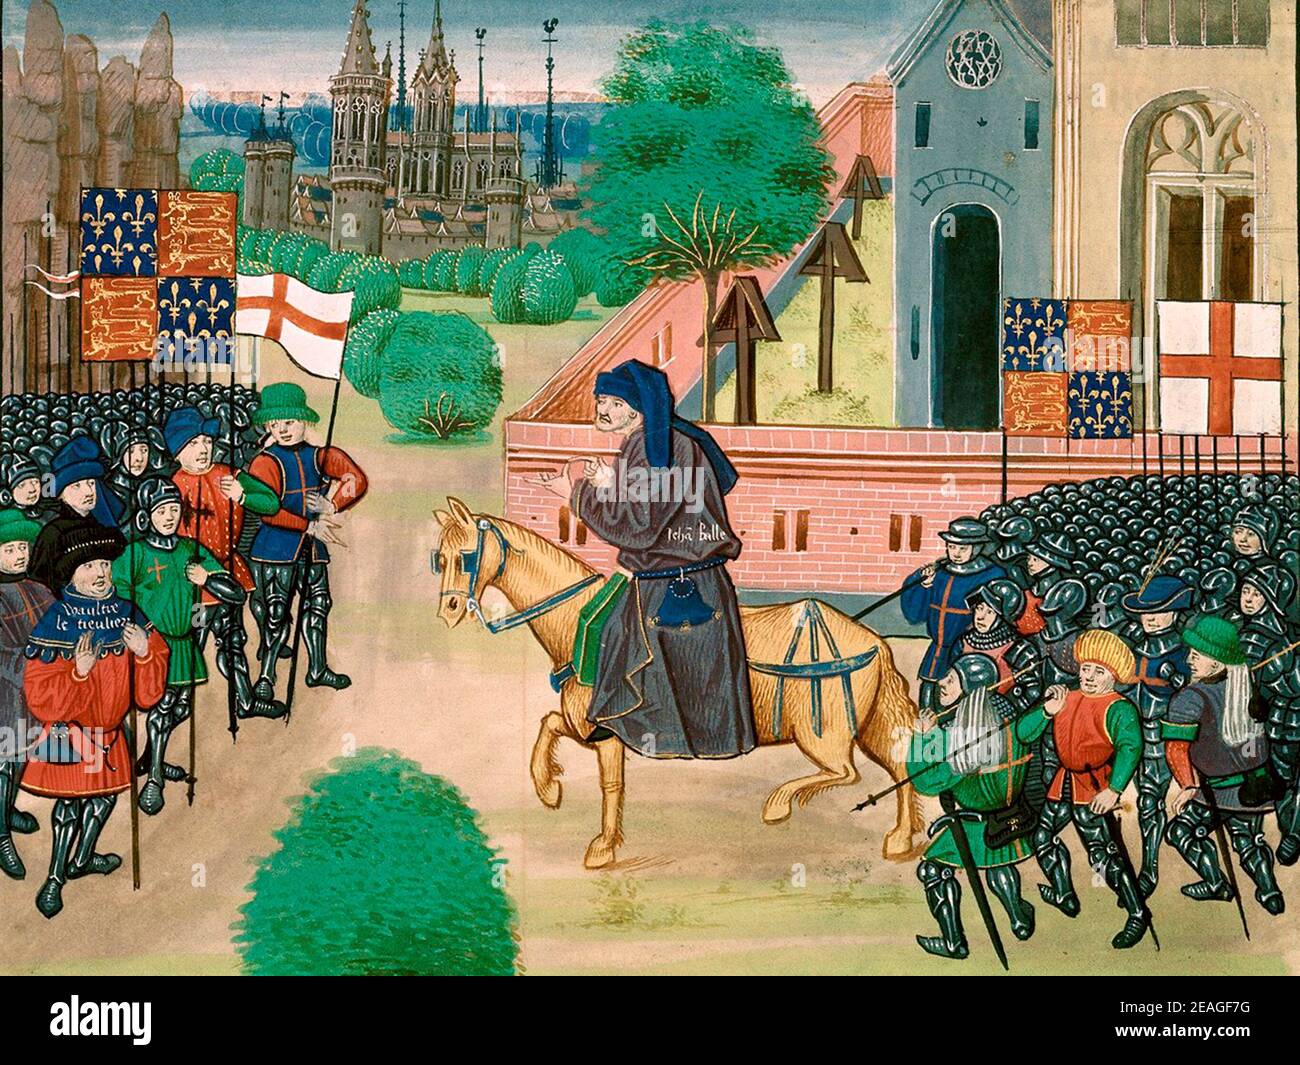 Représentation au XVe siècle du religieux John ball encourageant les rebelles; Wat Tyler est montré en rouge, avant gauche Banque D'Images